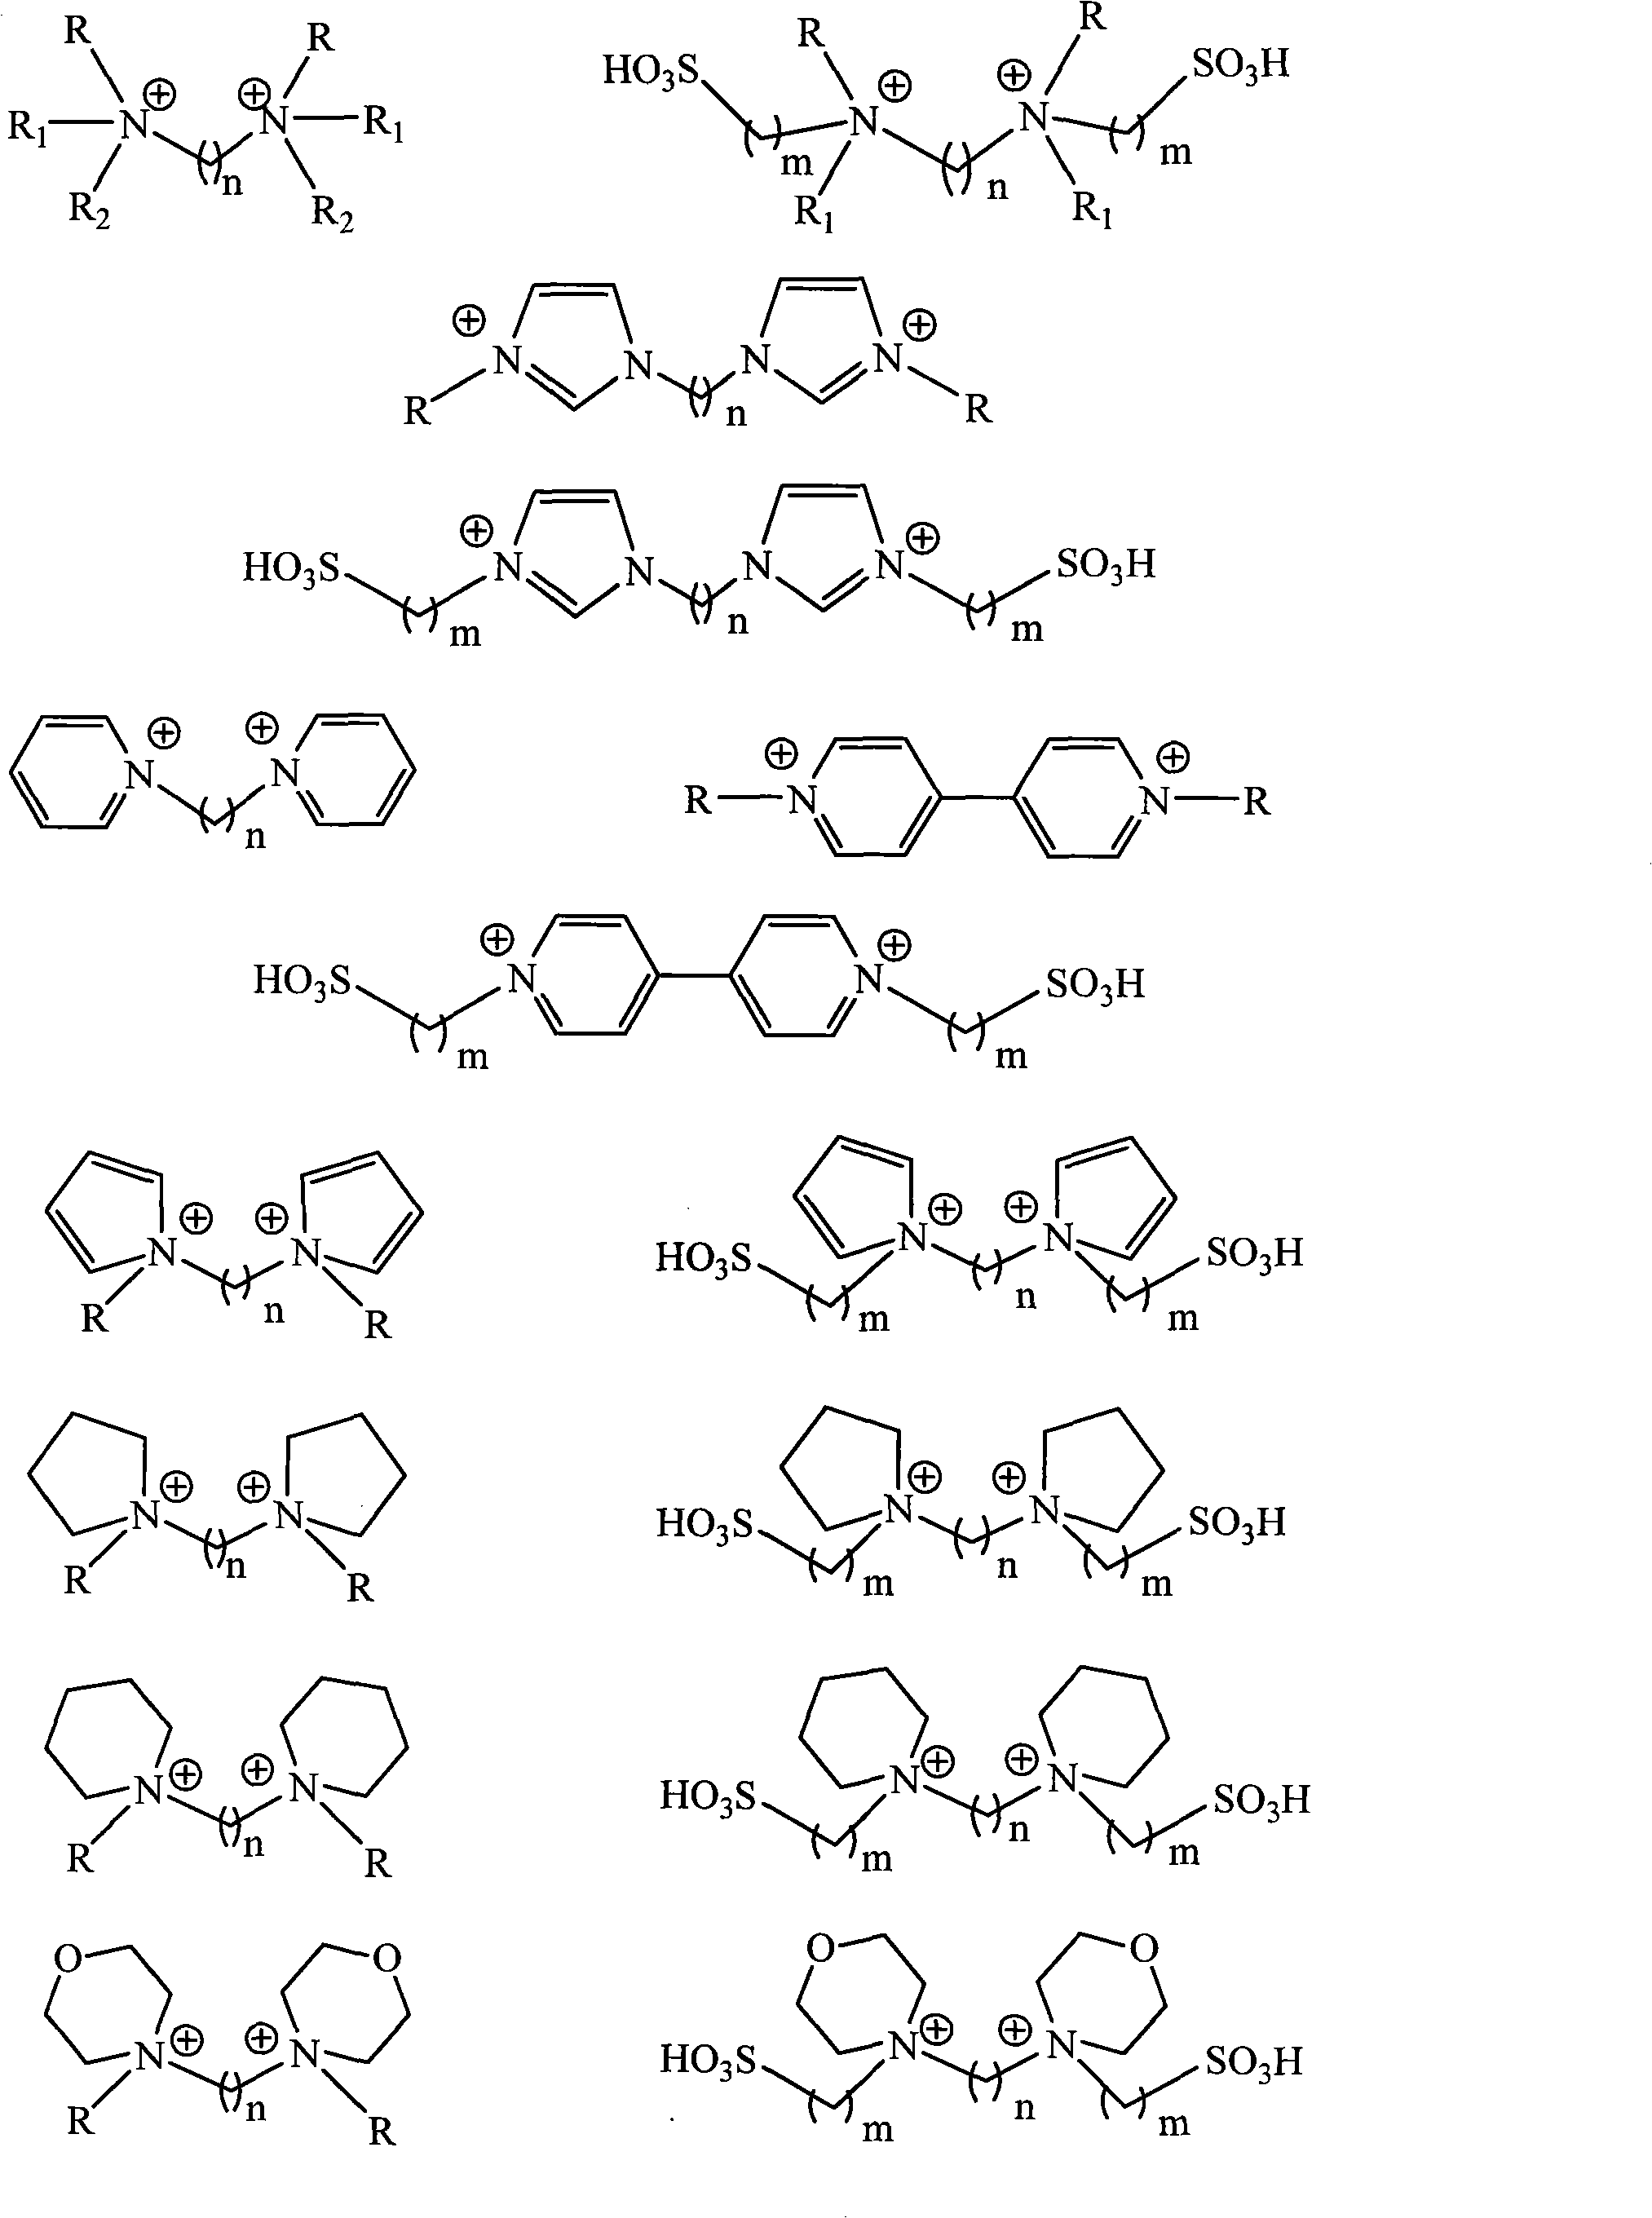 Method for synthesizing polymethoxy dimethyl ether under catalysis of geminal dicationic ionic liquid